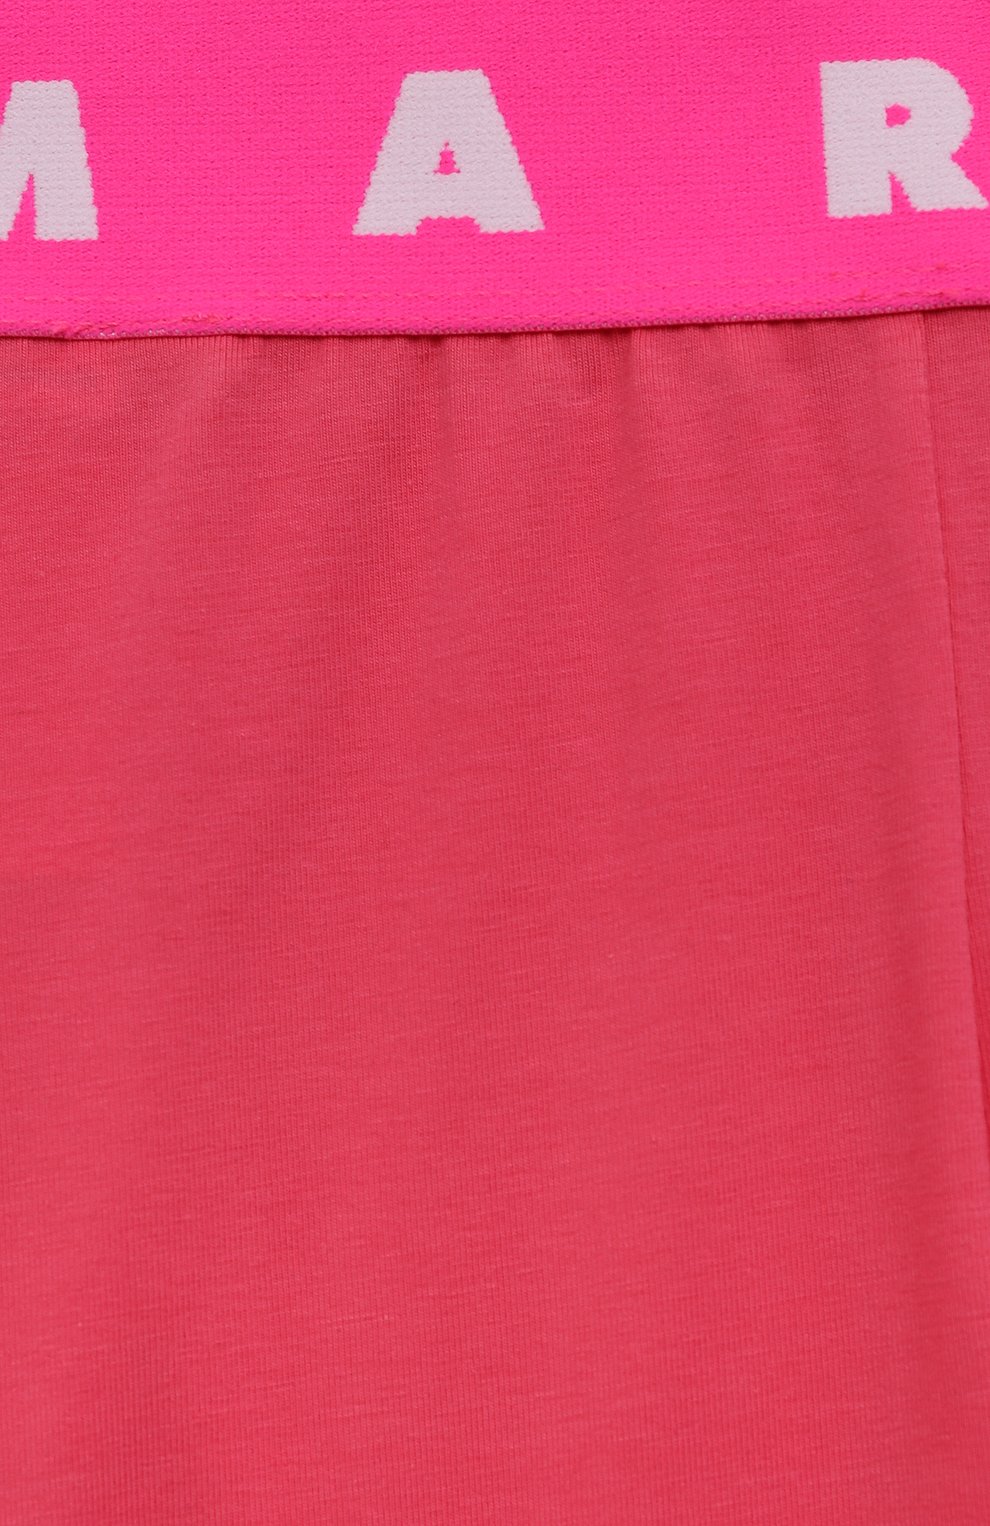 Детские хлопковые шорты MARNI розового цвета, арт. M00744/M00LE | Фото 3 (Материал внешний: Хлопок)